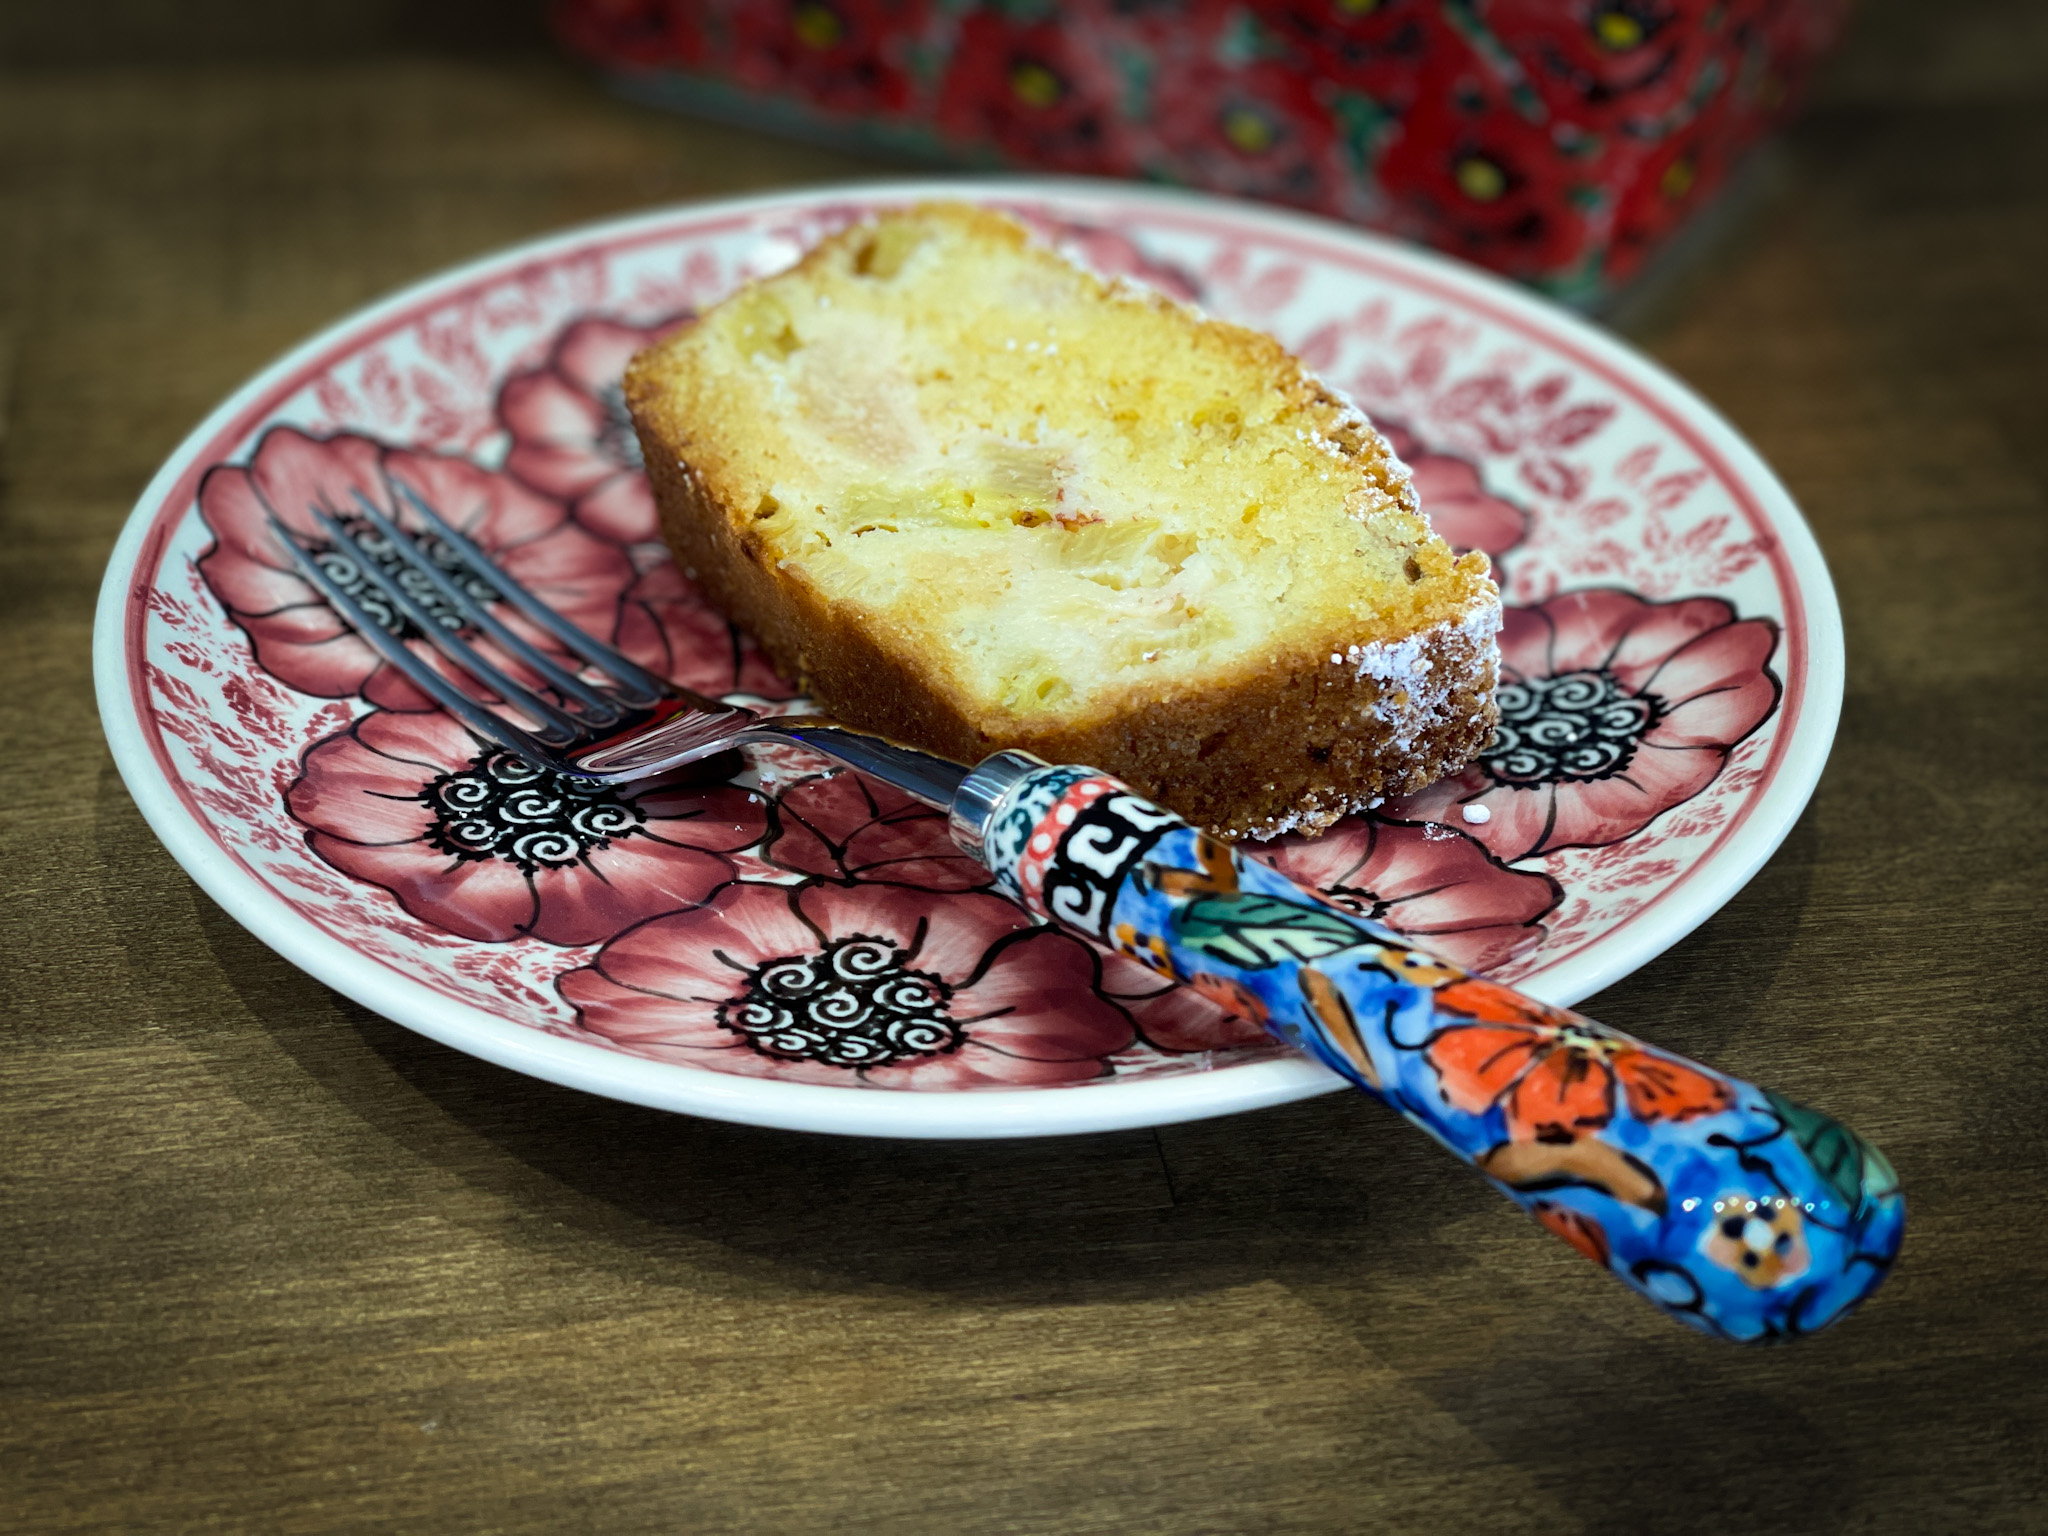 Polish Rhubarb Cake